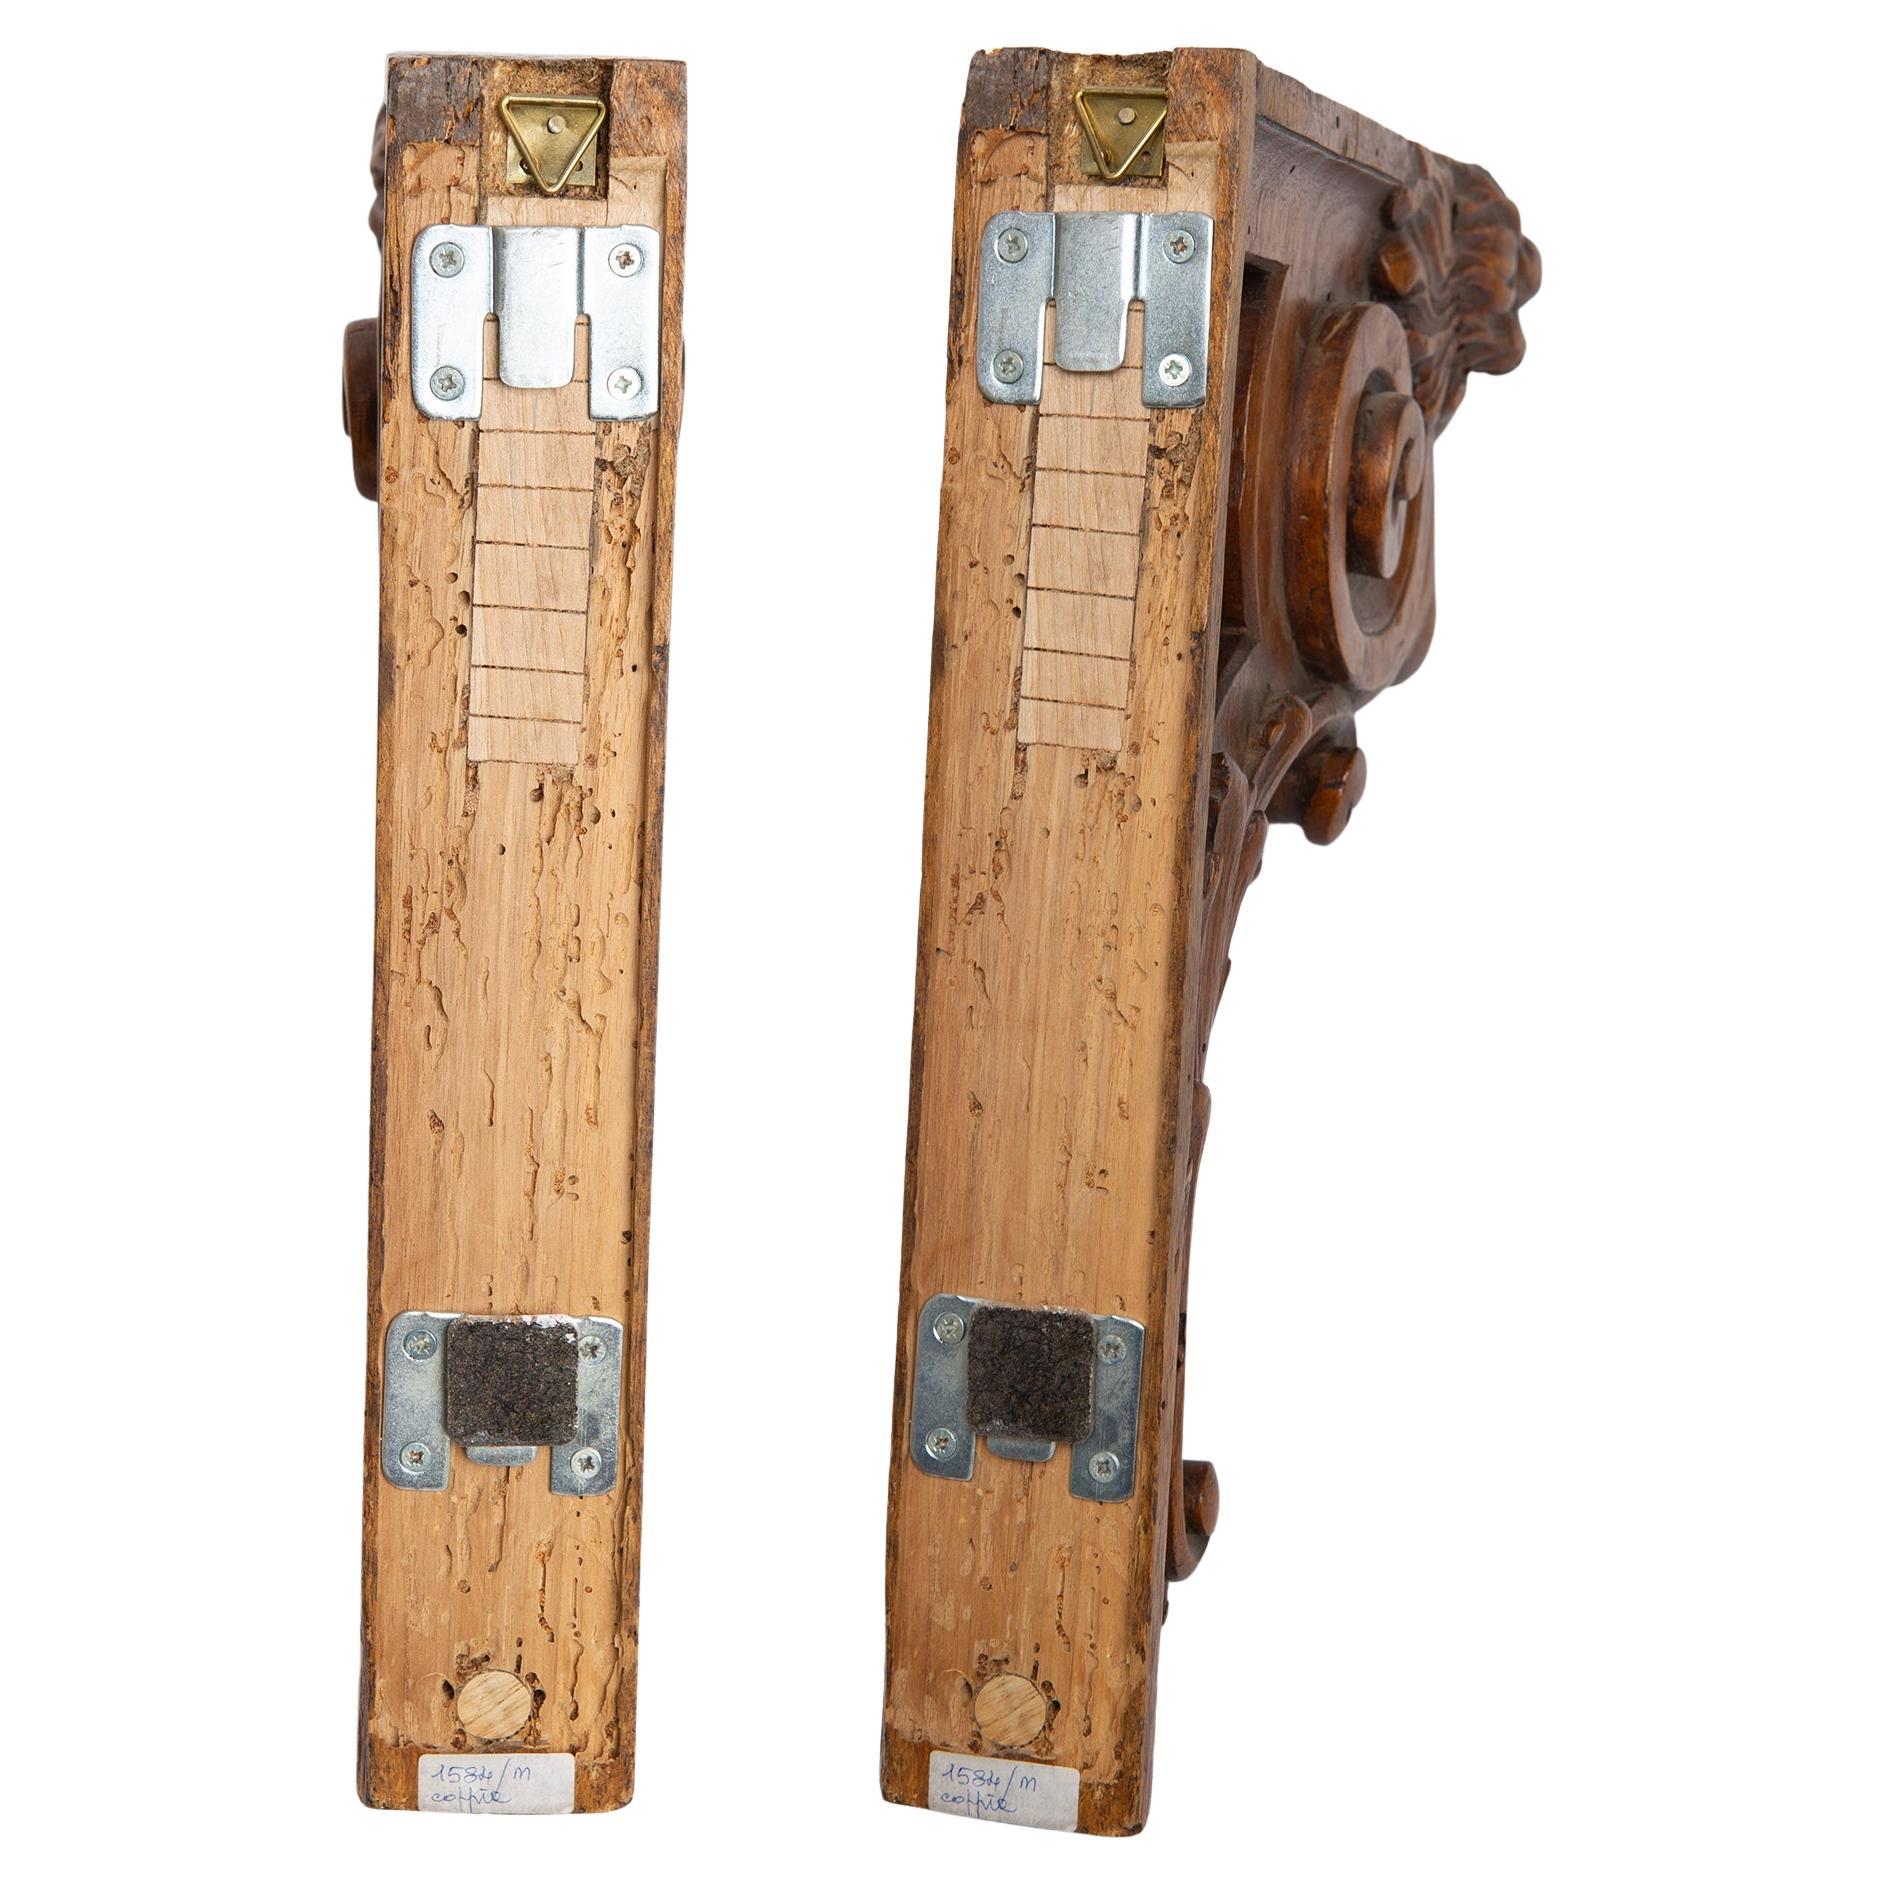 M/1584 -  Ungewöhnliches Paar Holzregale mit Karyatiden: perfekt mit einem einfachen Holzregal.
Sie waren in einem venezianischen Haus.